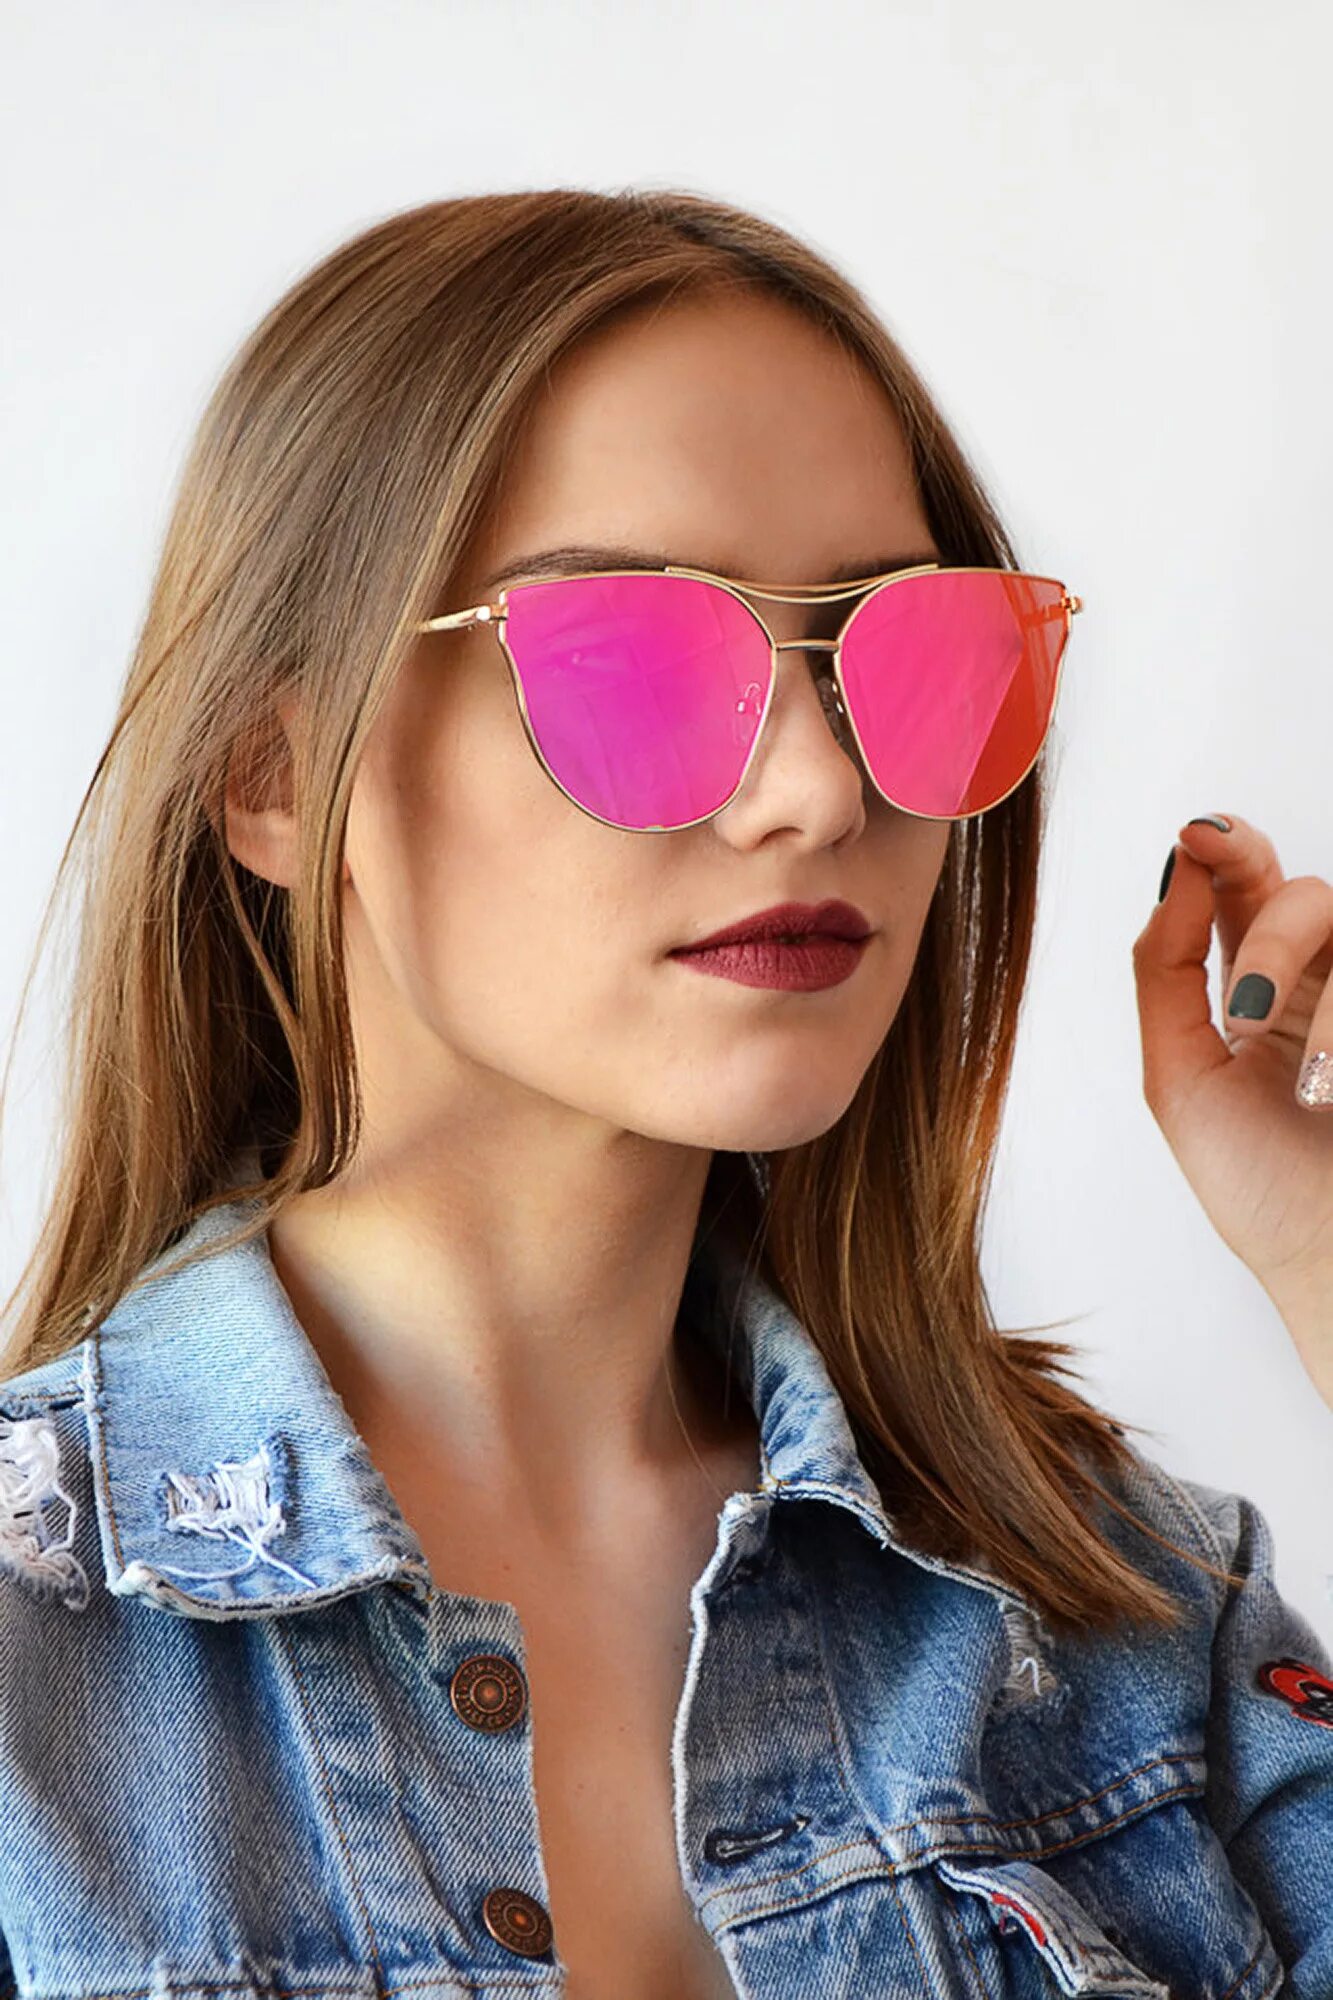 Розовые солнцезащитные очки купить. Розовые солнцезащитные очки. Очки солнцезащитные женские розовые. Розовые солнечные очки женские. Солнцезащитные очки с розовыми стеклами.